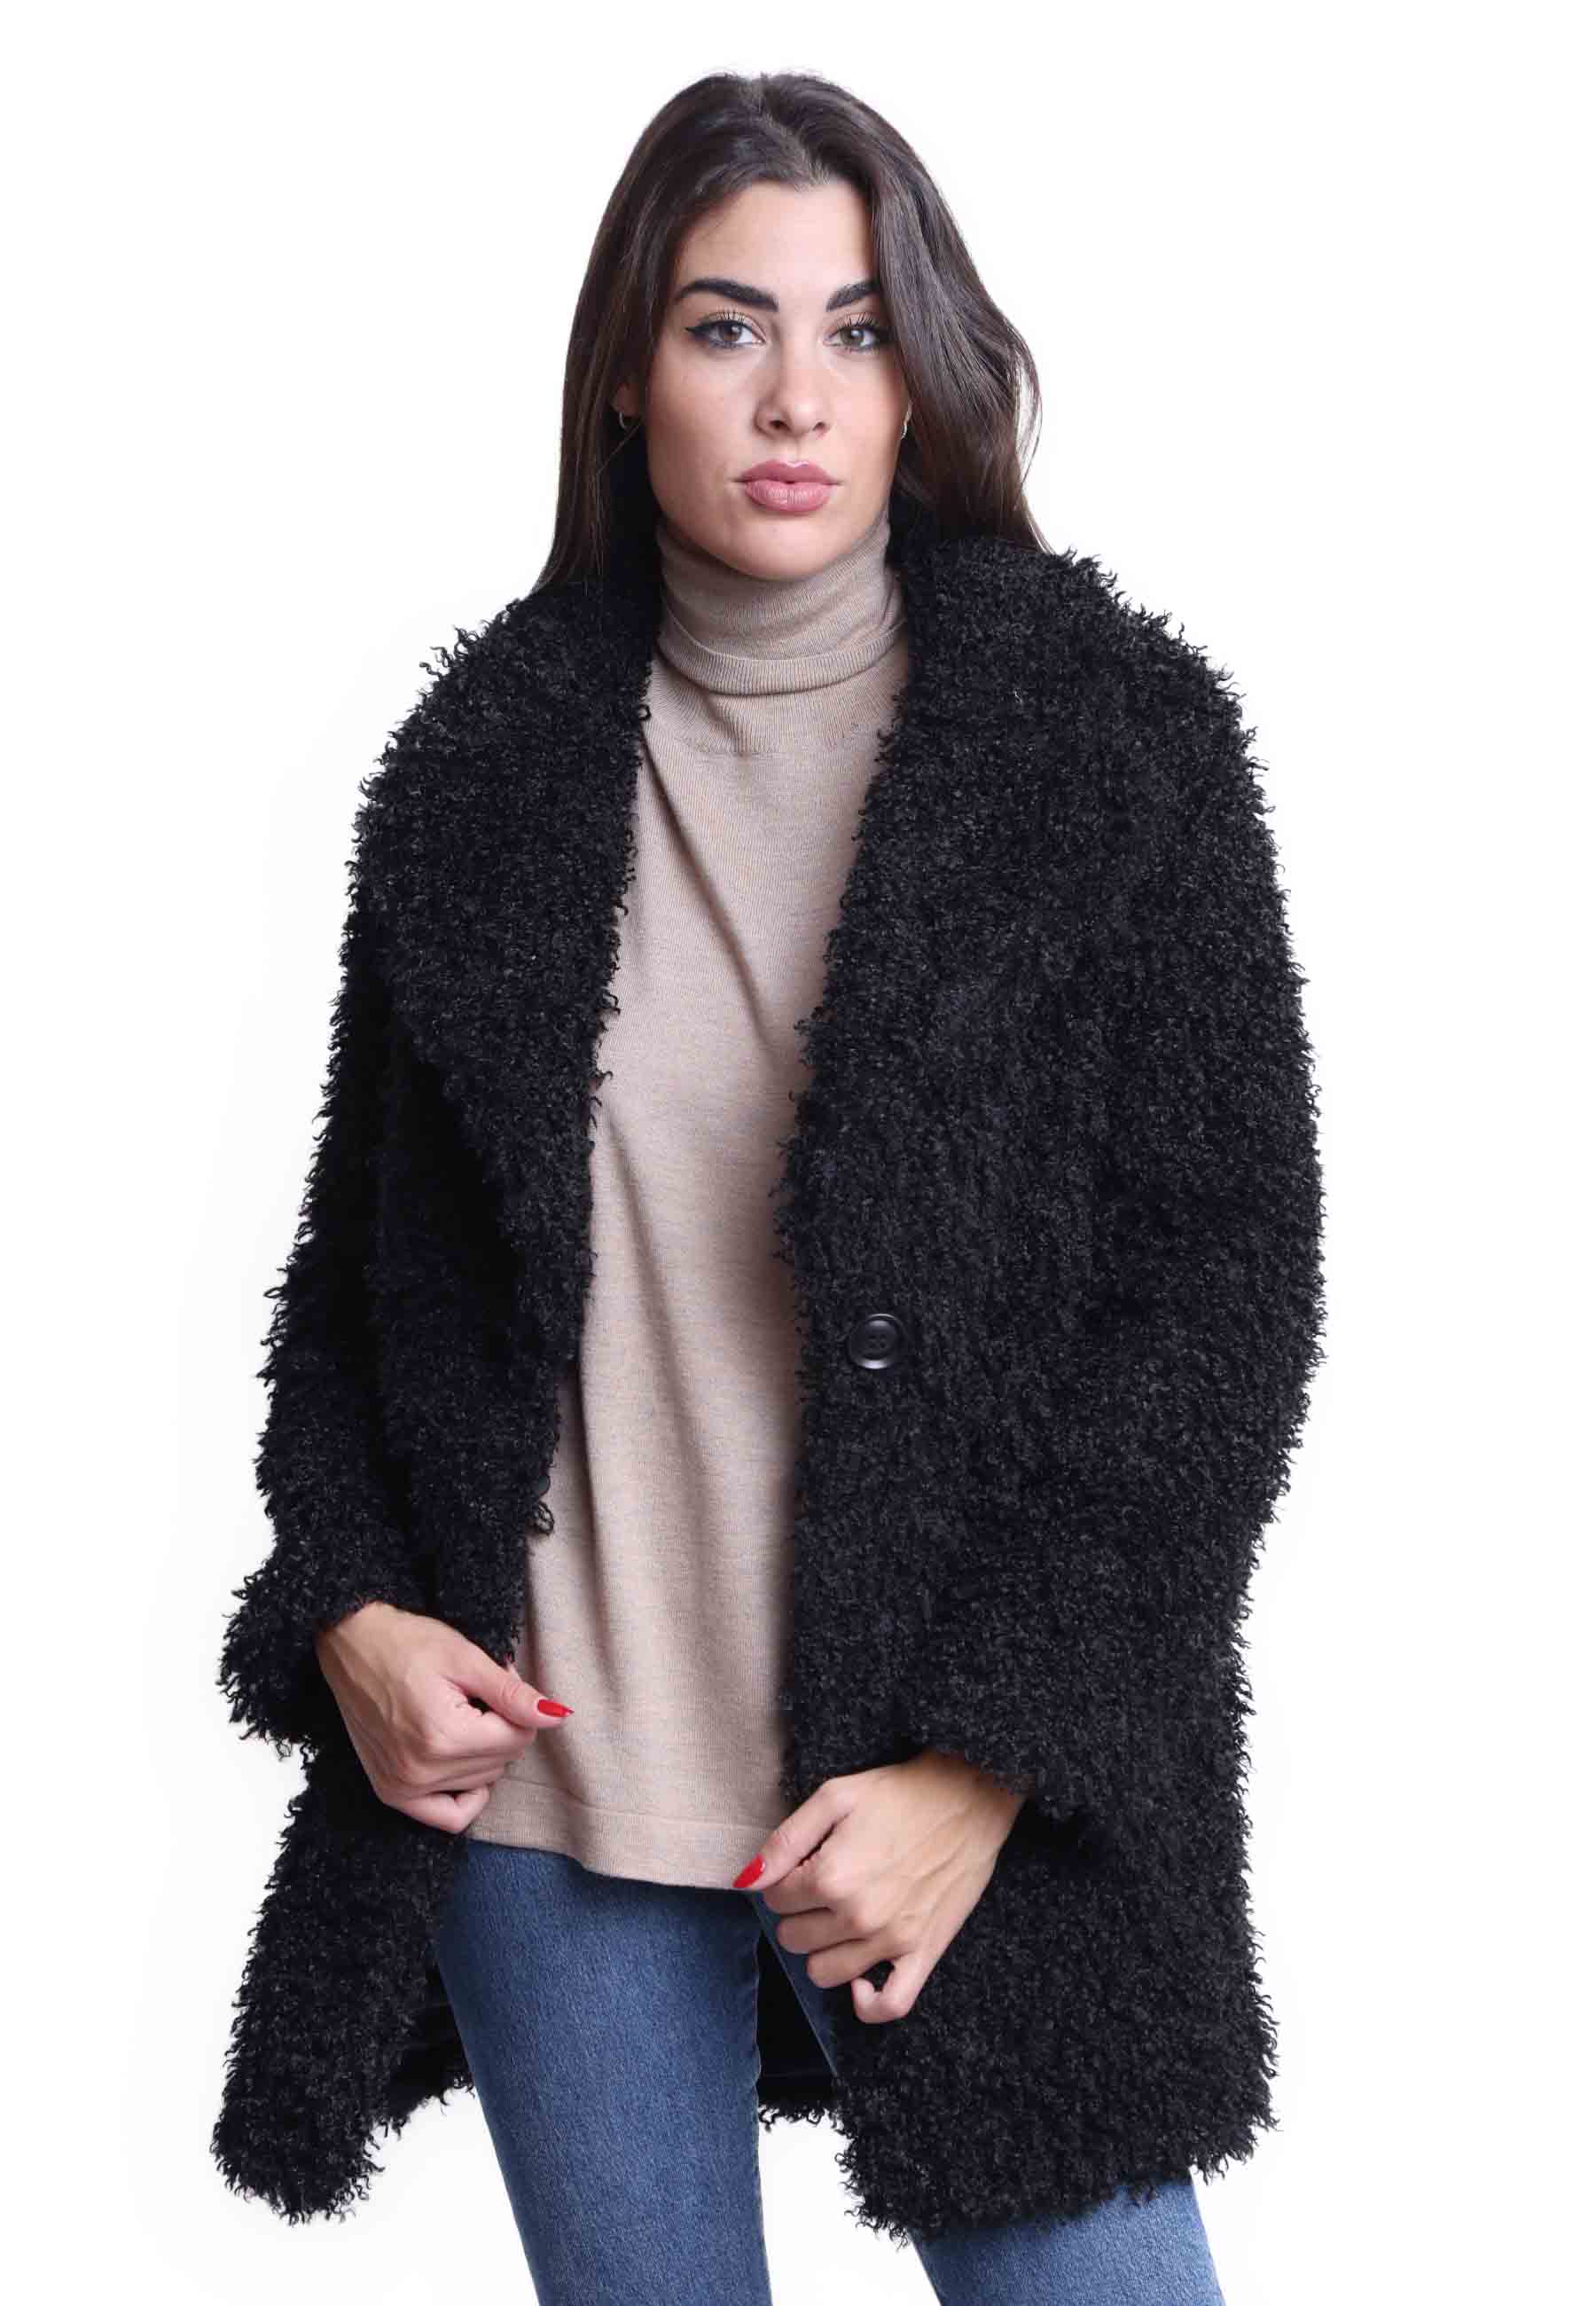 Manteaux teddy pour femmes en éco-fourrure noire avec grand boutonnage simple à un bouton